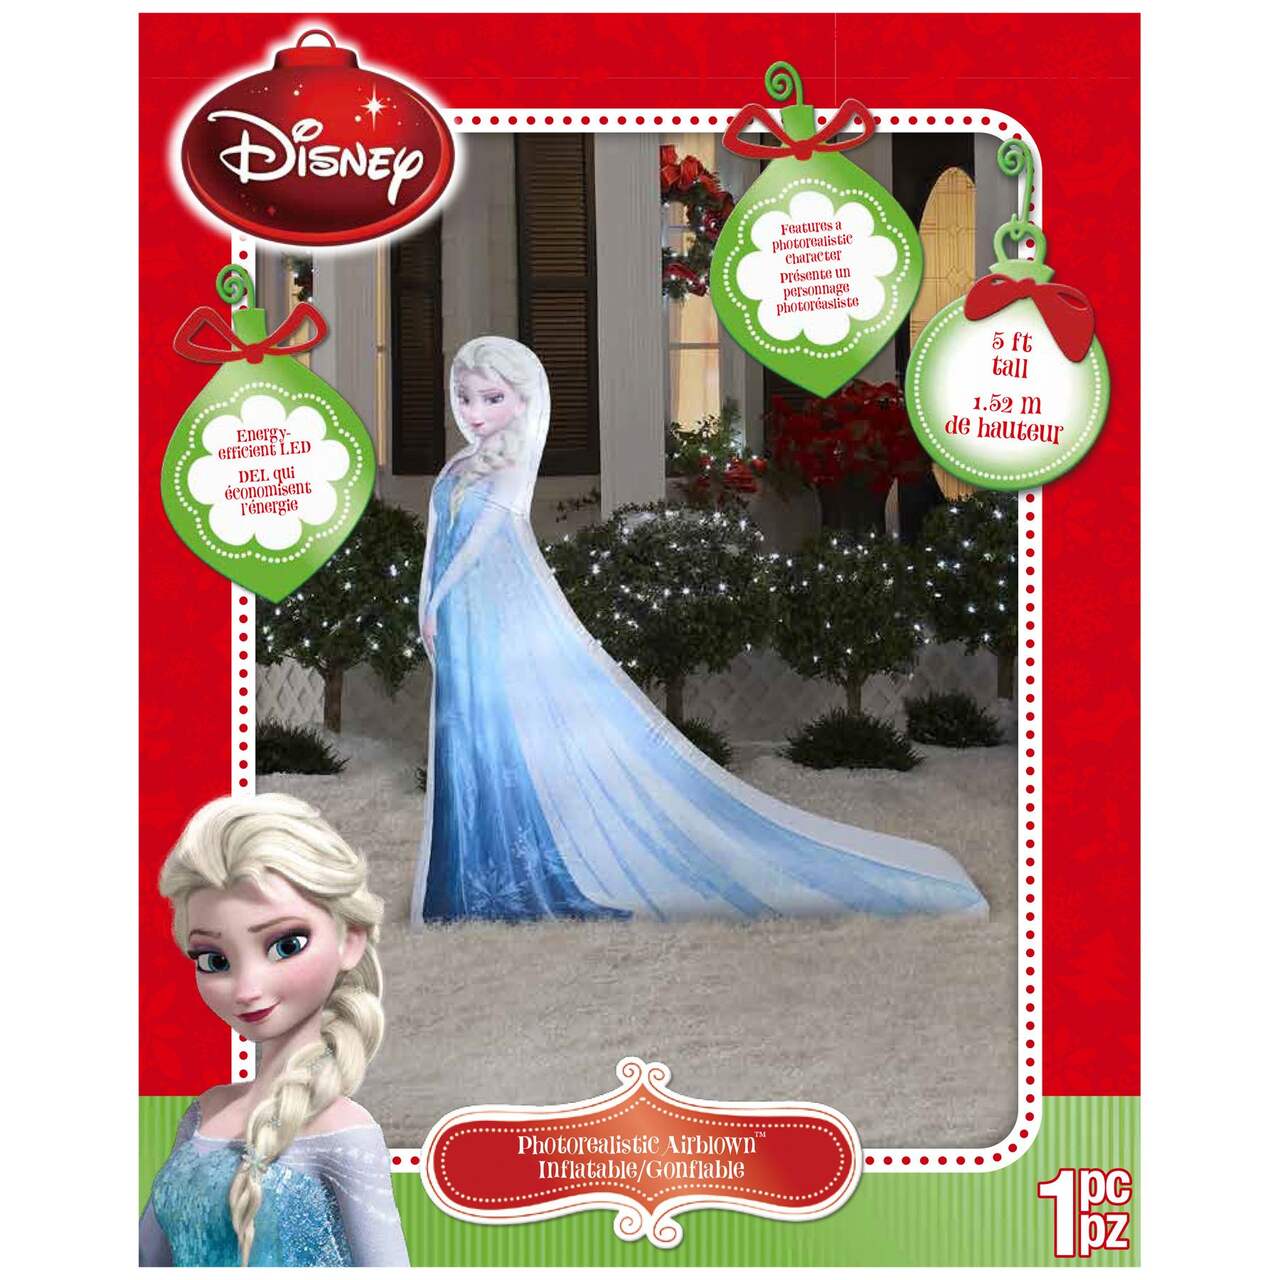 Elsa gonflable de La Reine des neiges de Disney, 5 pi